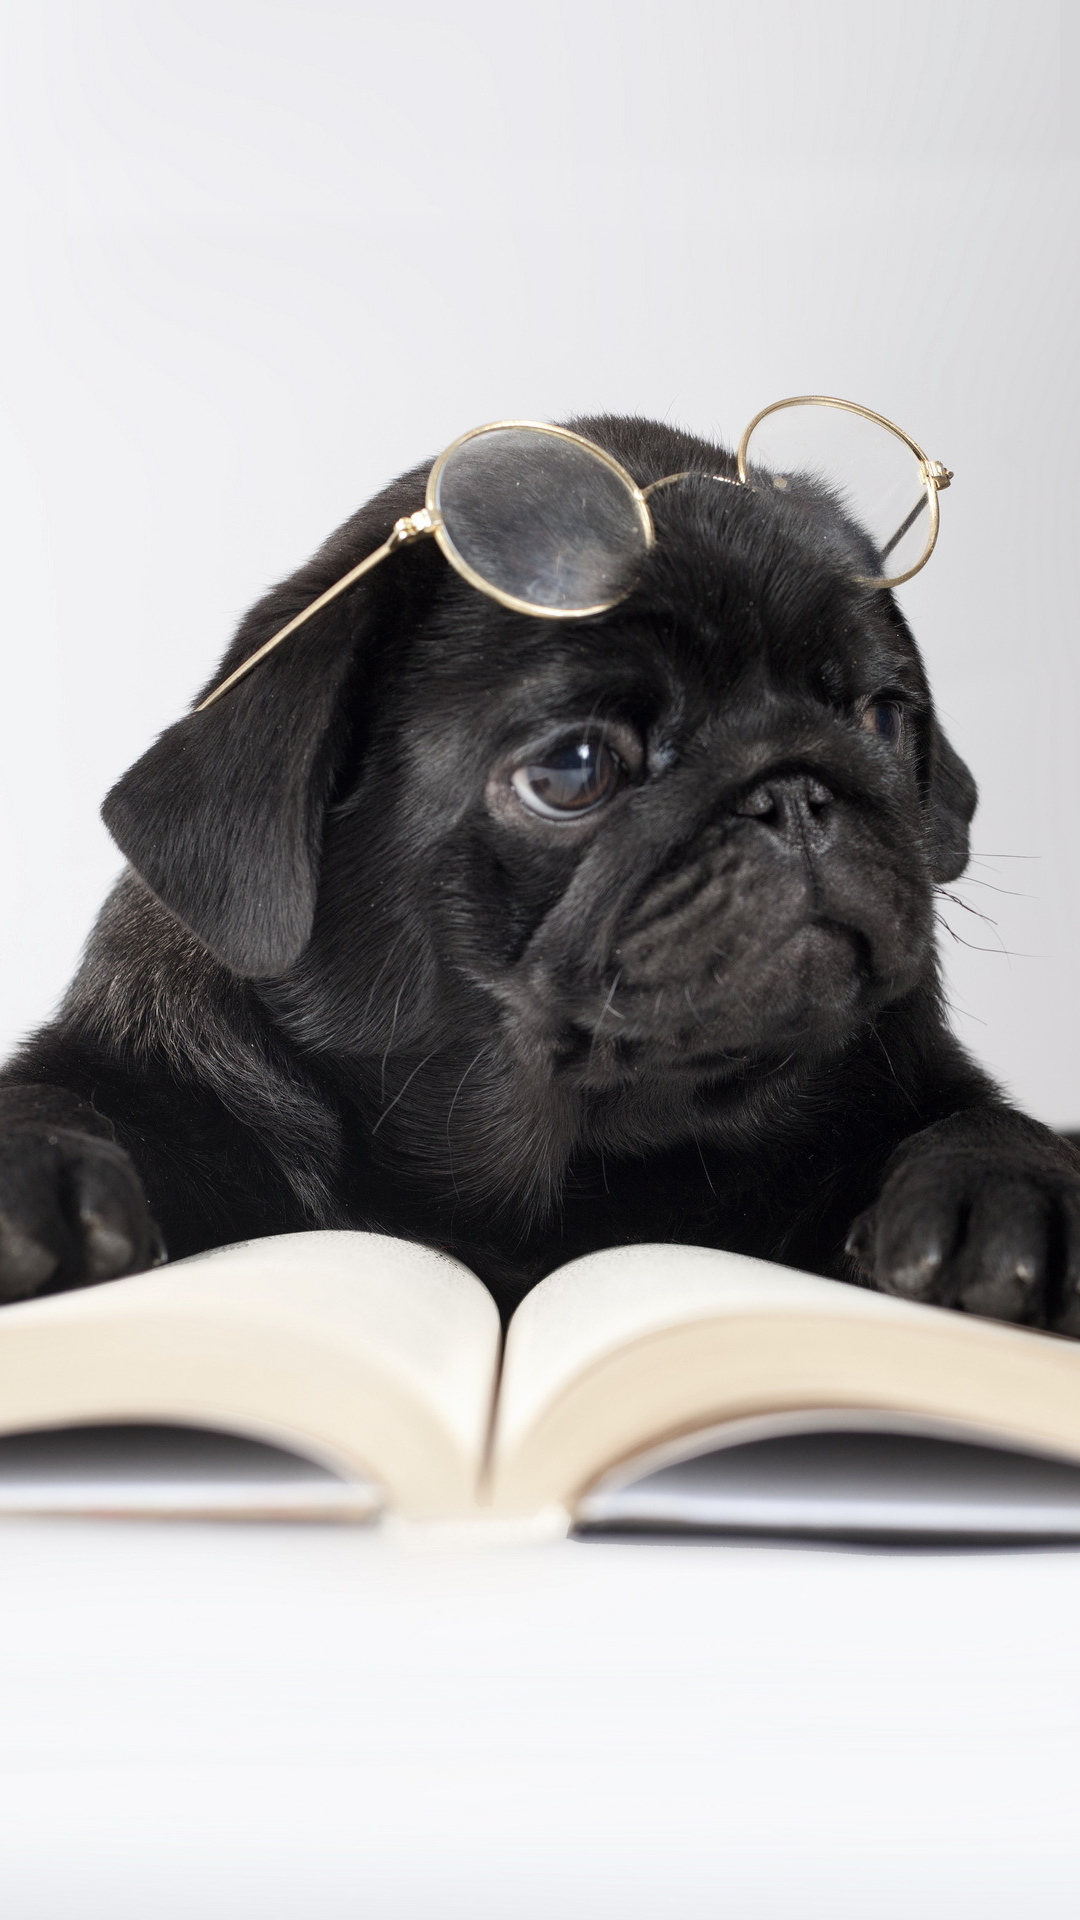 Bạn đang tìm kiếm một bức ảnh chó dễ thương để làm hình nền cho điện thoại iPhone của mình? Cuốn sách, kính cận và chú chó yêu quý sẽ khiến bạn không thể rời mắt khỏi màn hình điện thoại.